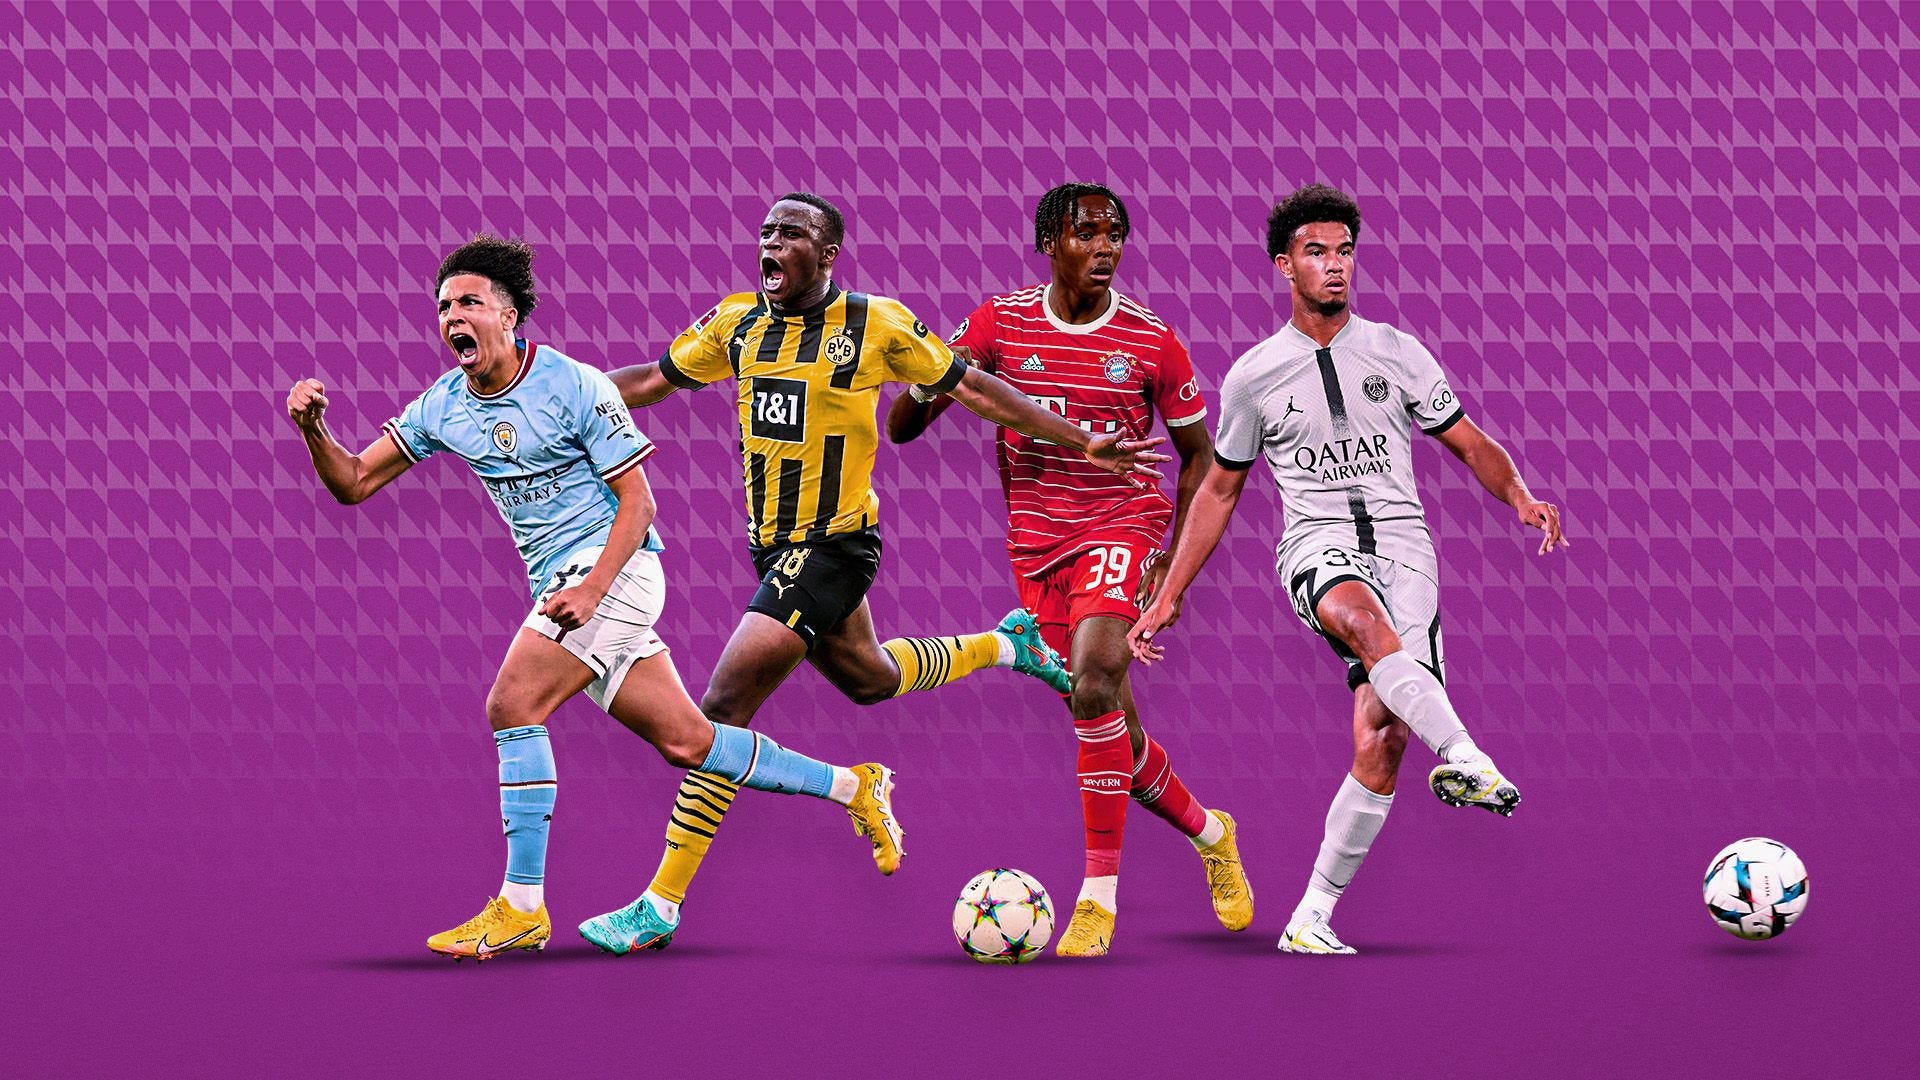 NXGN - Bạn đã biết gì về NXGN? Đây là danh sách 50 tài năng trẻ nhất trong bóng đá thế giới, thuộc sự kiện do tạp chí Goal tổ chức hàng năm. Hãy đến và khám phá những gương mặt triển vọng của ngành thể thao này, và xem ai sẽ trở thành cầu thủ vĩ đại của tương lai.